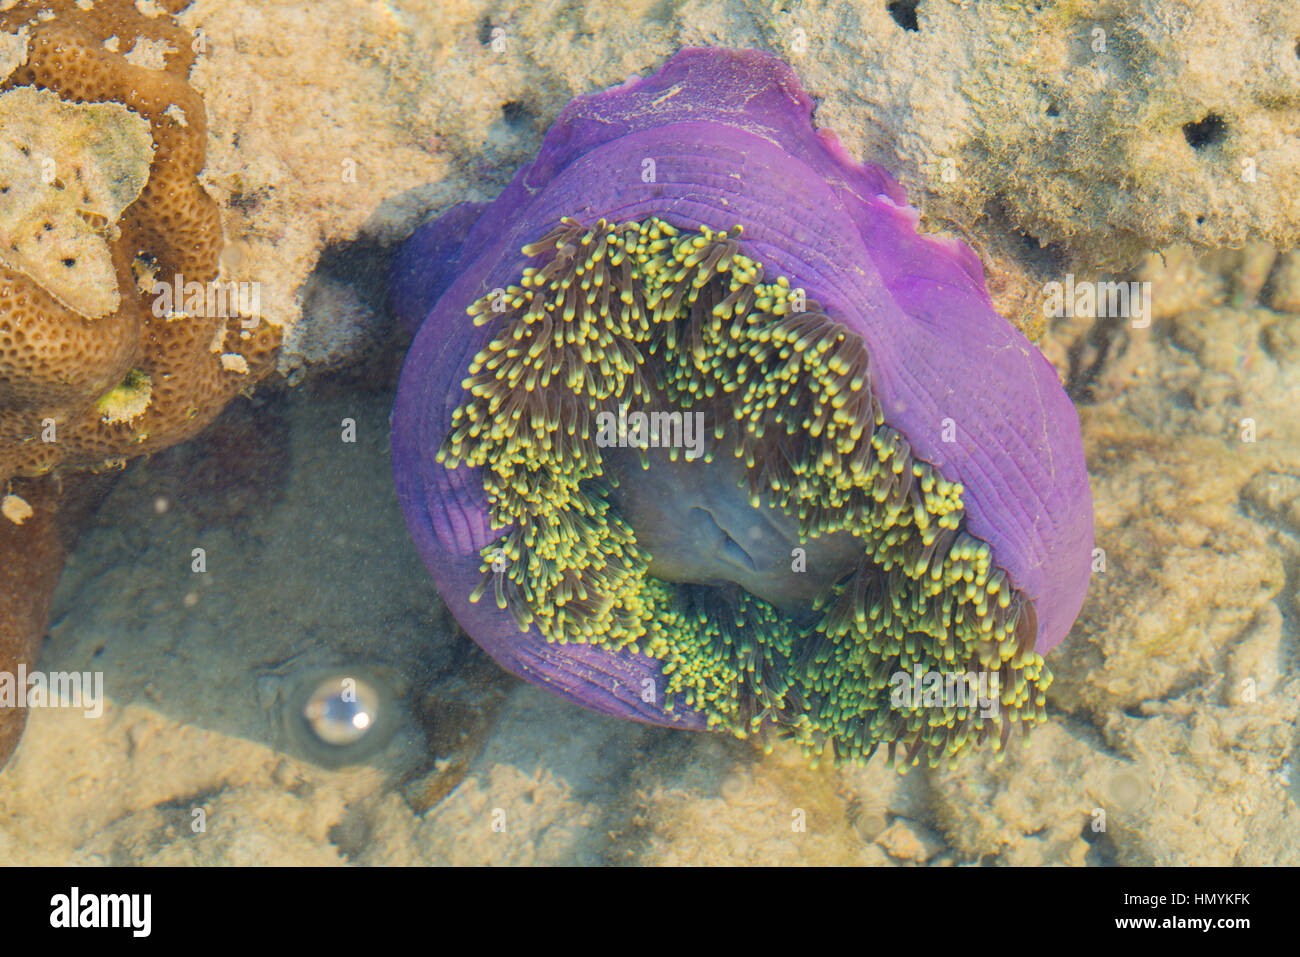 purple anemone under water Stock Photo